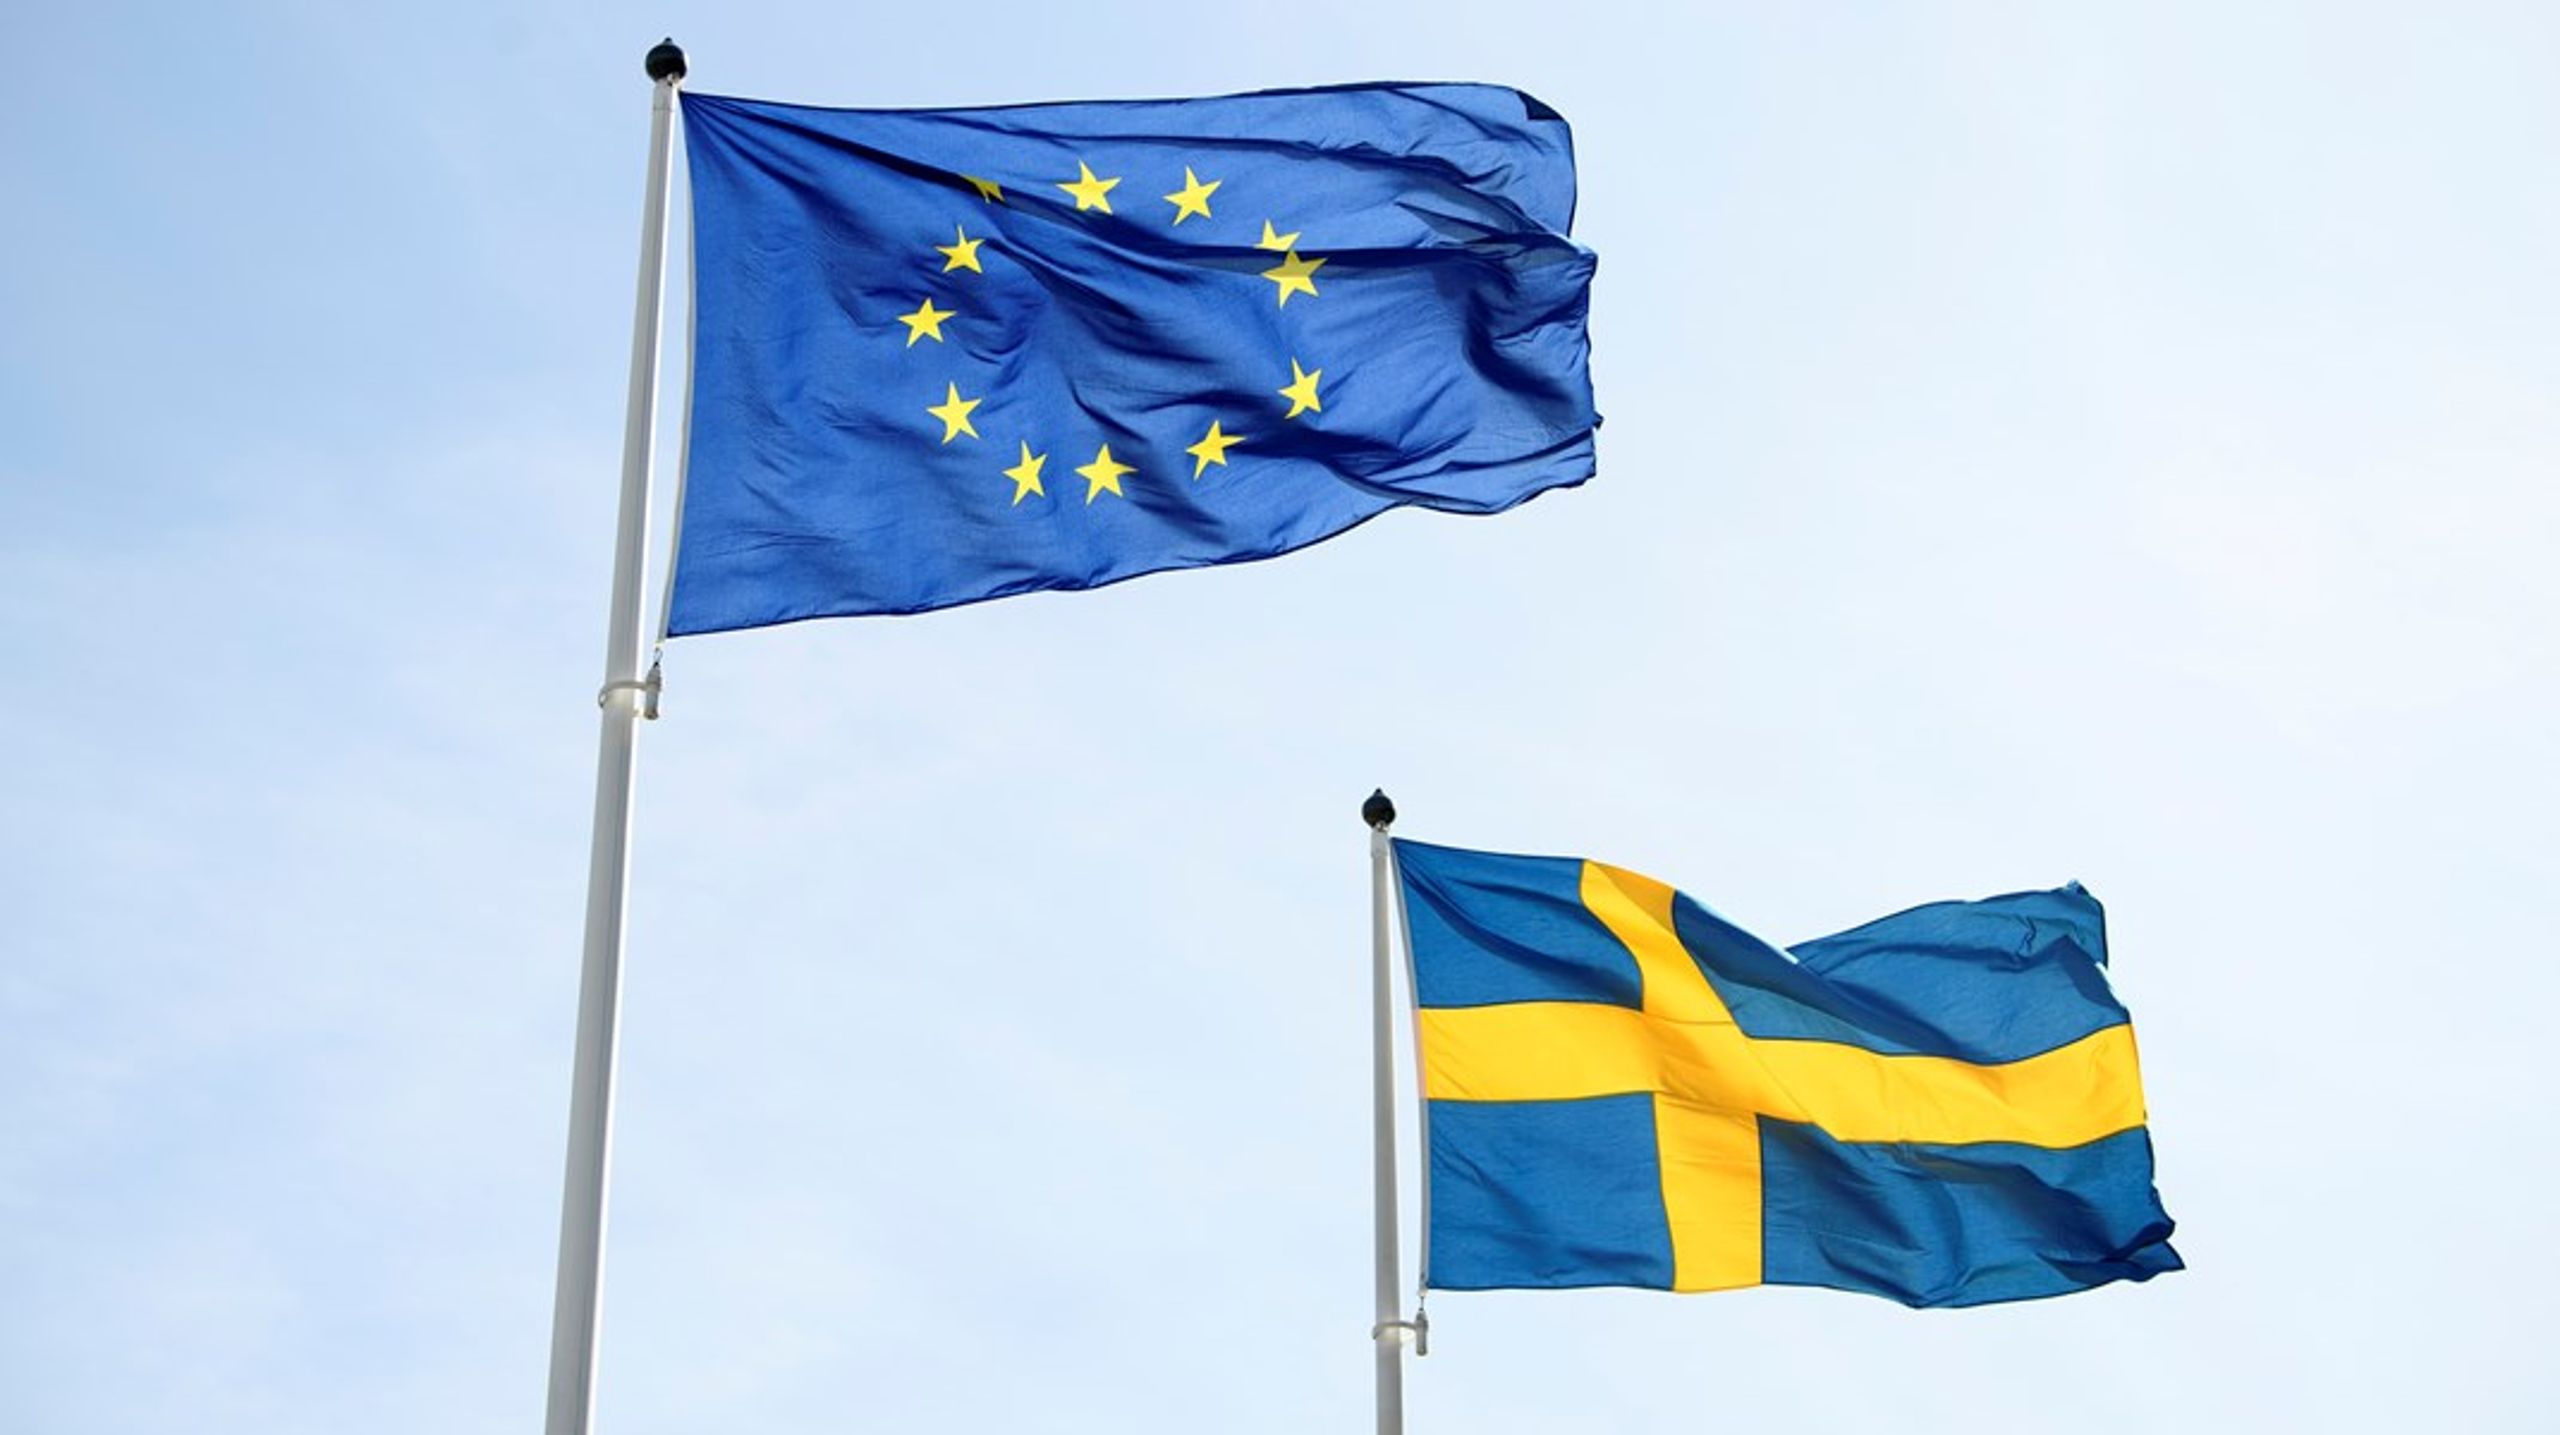 ”Sverige behöver bli mer proaktivt i EU och bygga allianser med likasinnade kring konkreta förslag”.